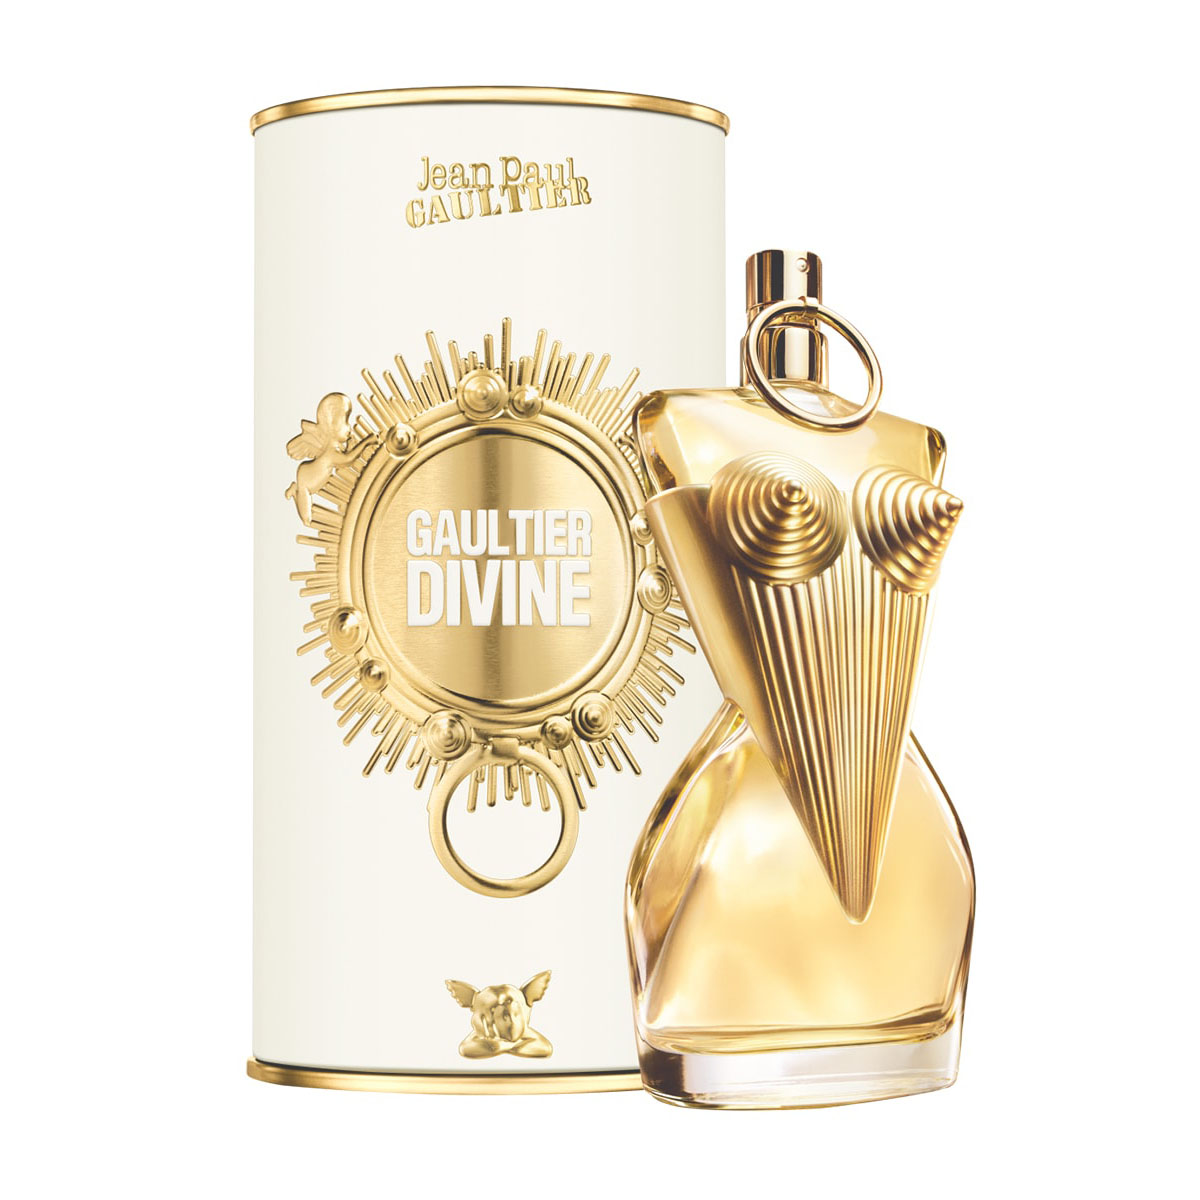 Jean Paul Gaultier Divine ~ Critiques de Parfums